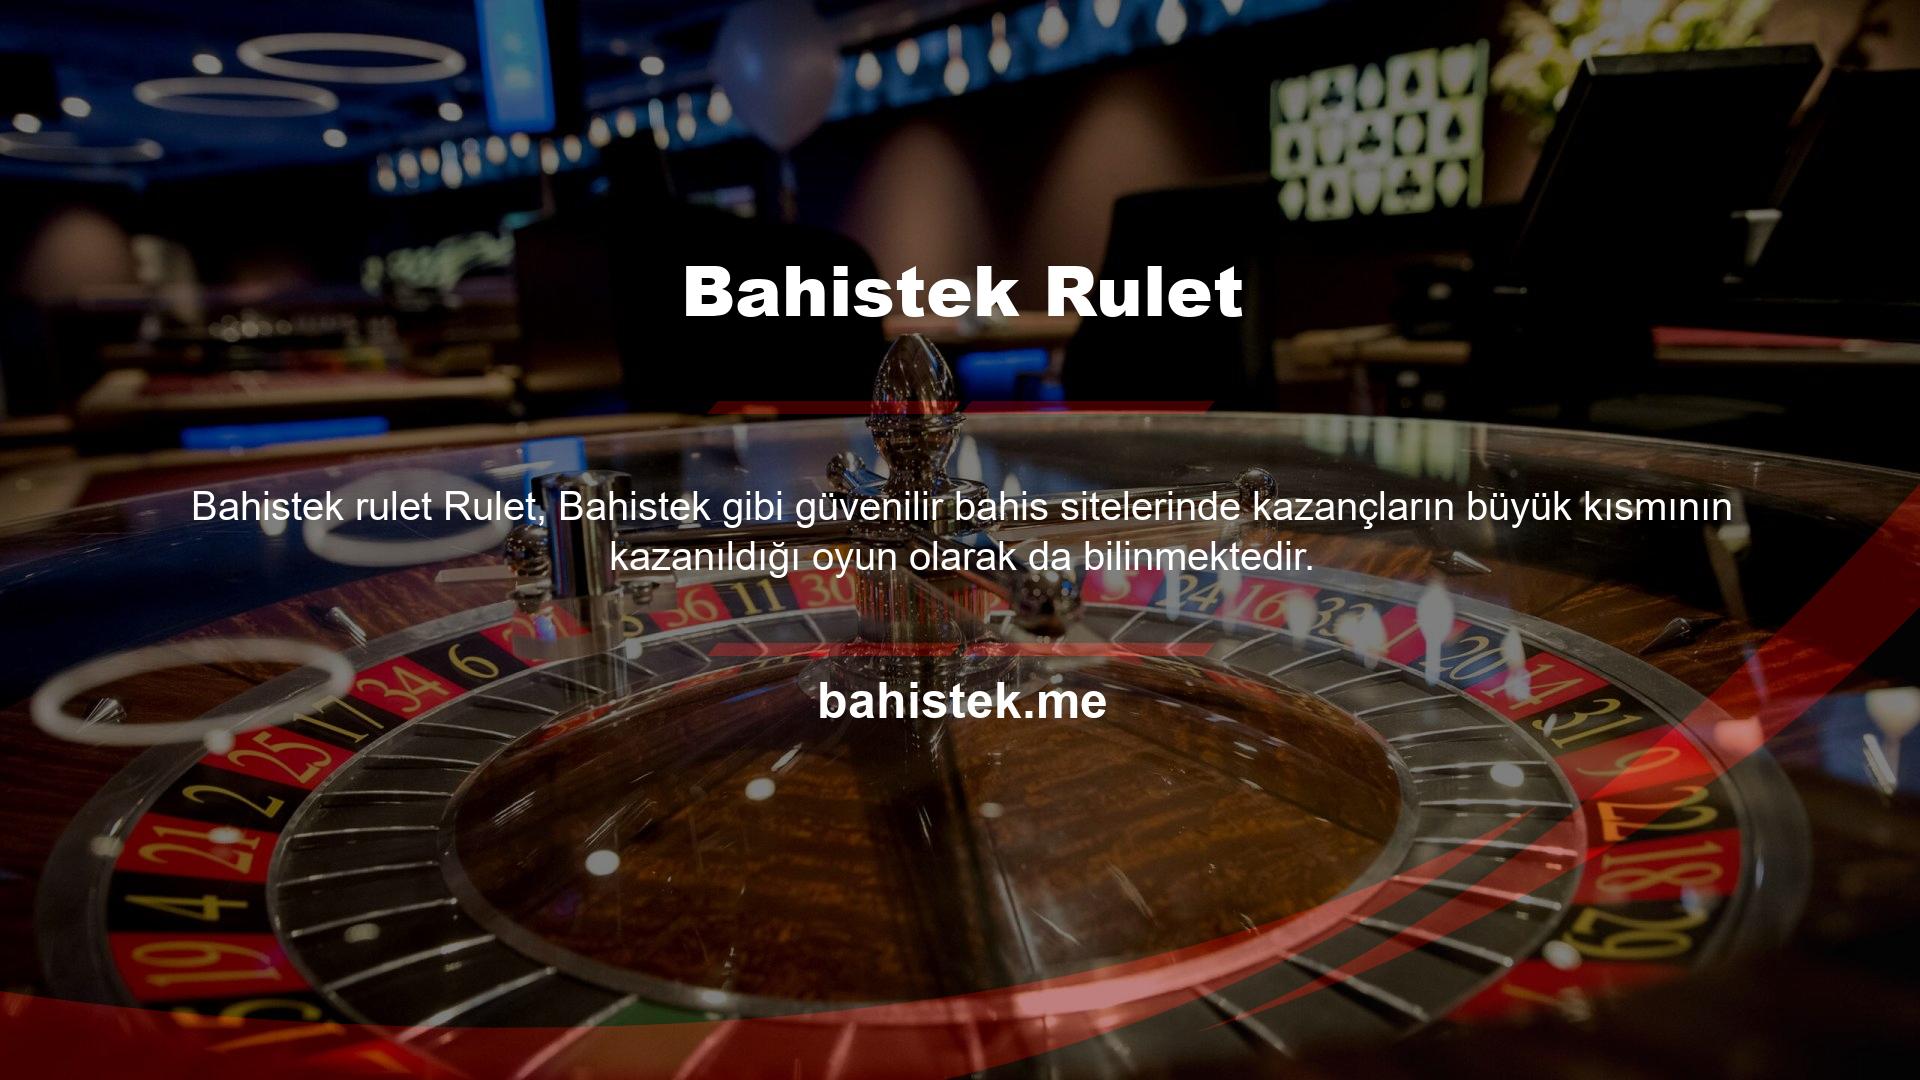 Güvenilir bahis sitelerinin casino oyunları içerisinde yer alan rulet oyunu casino oyunları olarak da bilinmektedir